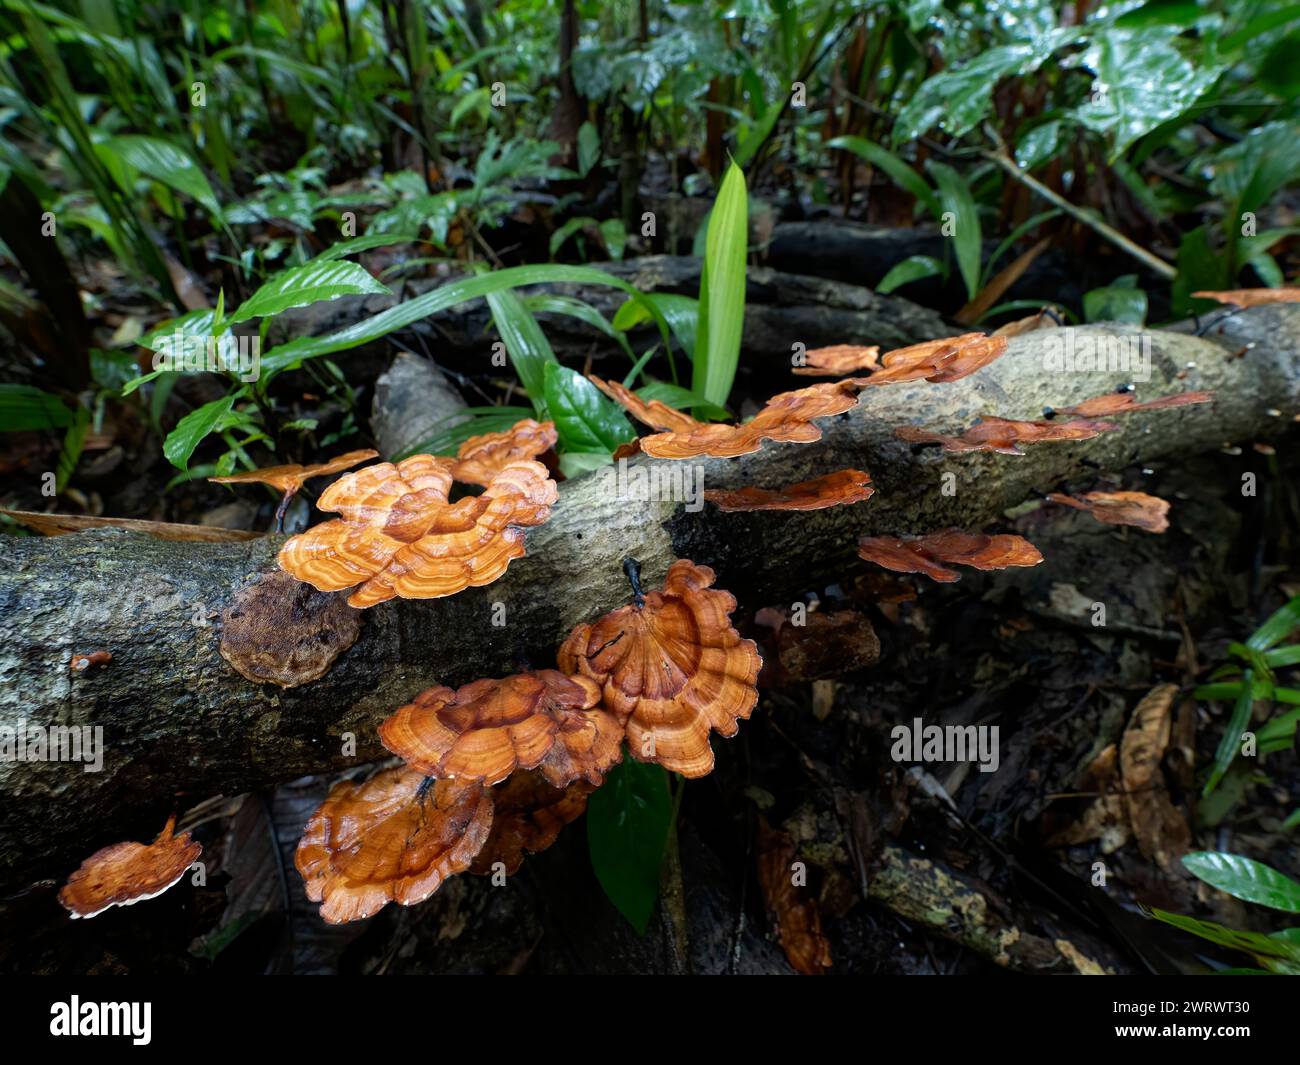 Funghi a staffa (Ganoderma sp.) Sul legno in decomposizione, la riserva naturale di Khao Sok, Thailandia Foto Stock